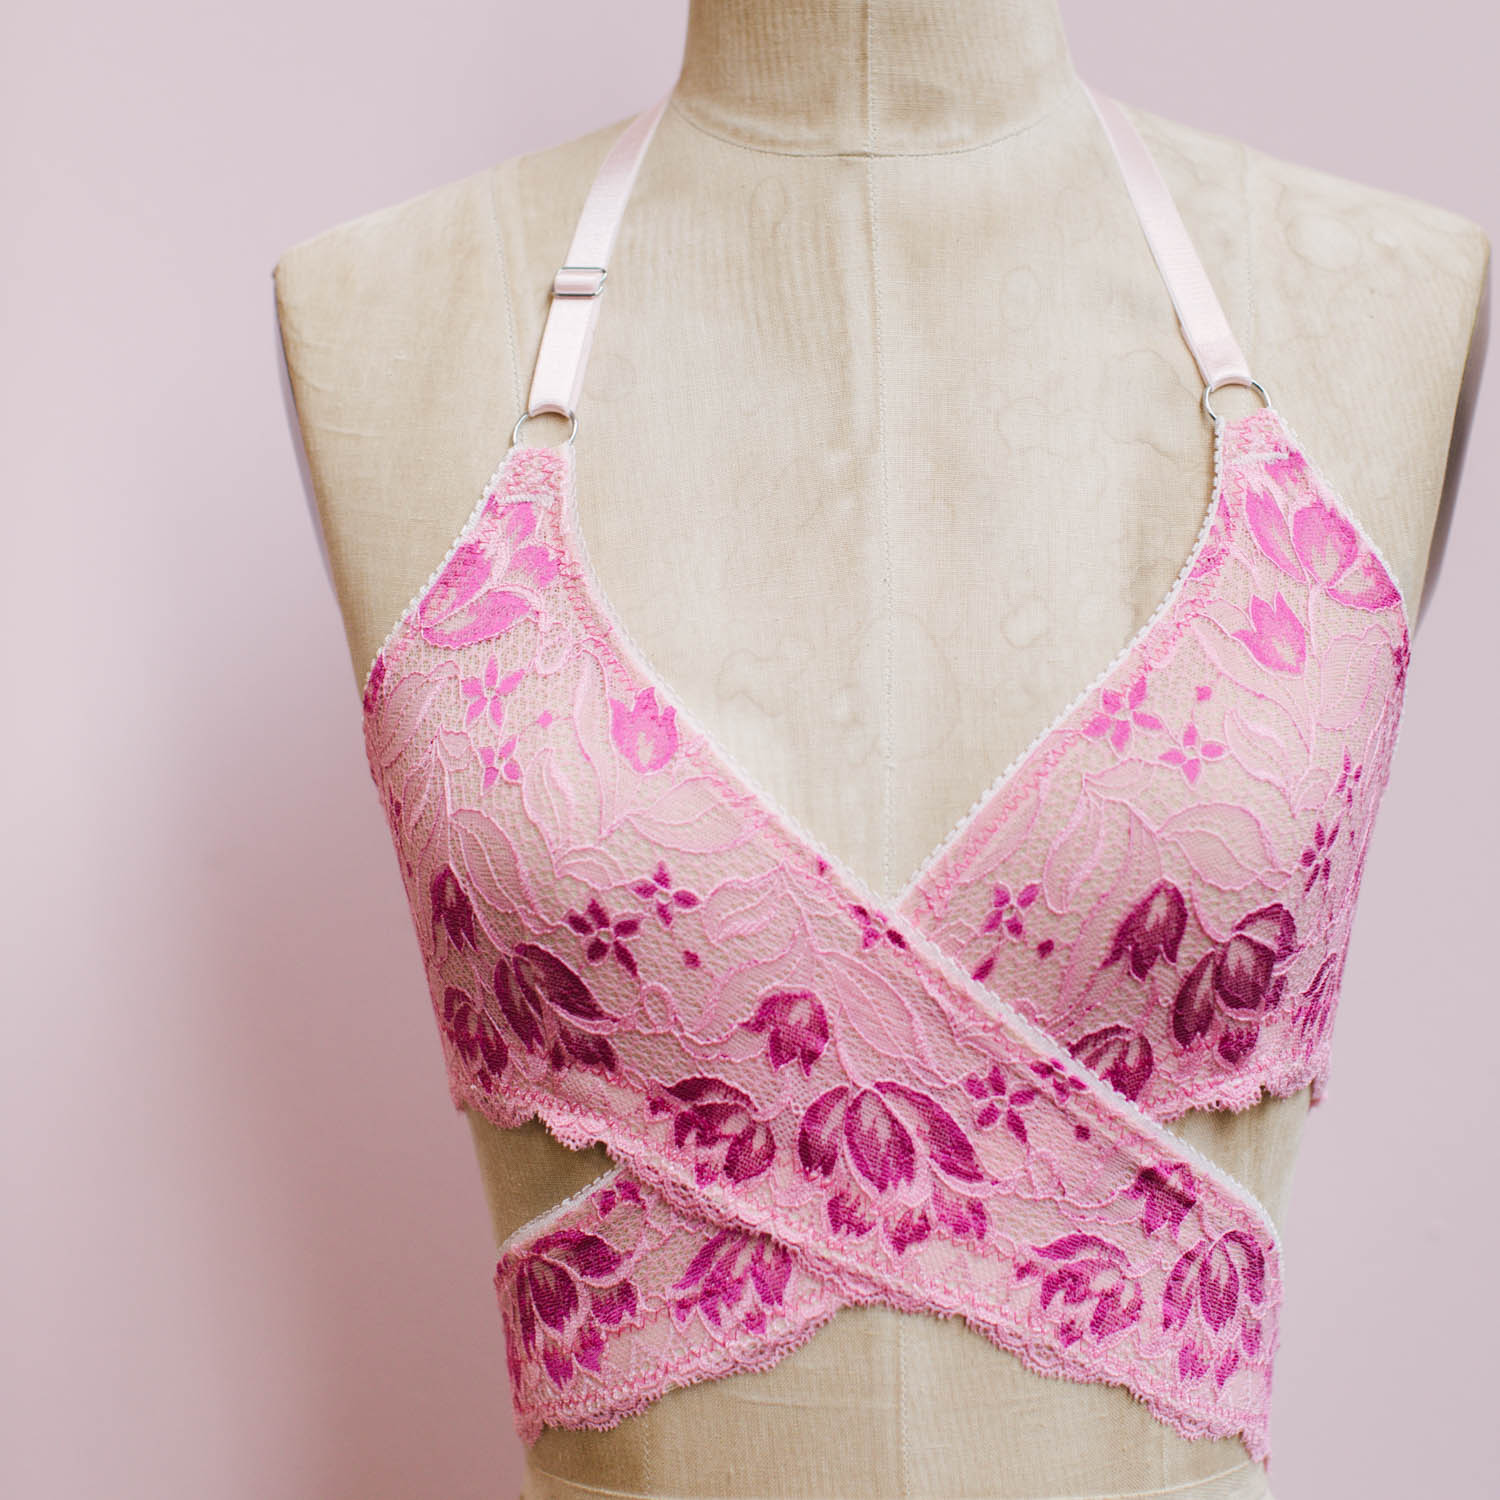 Sierra DIY Bralette Sewing Pattern by Madalynne Intimates